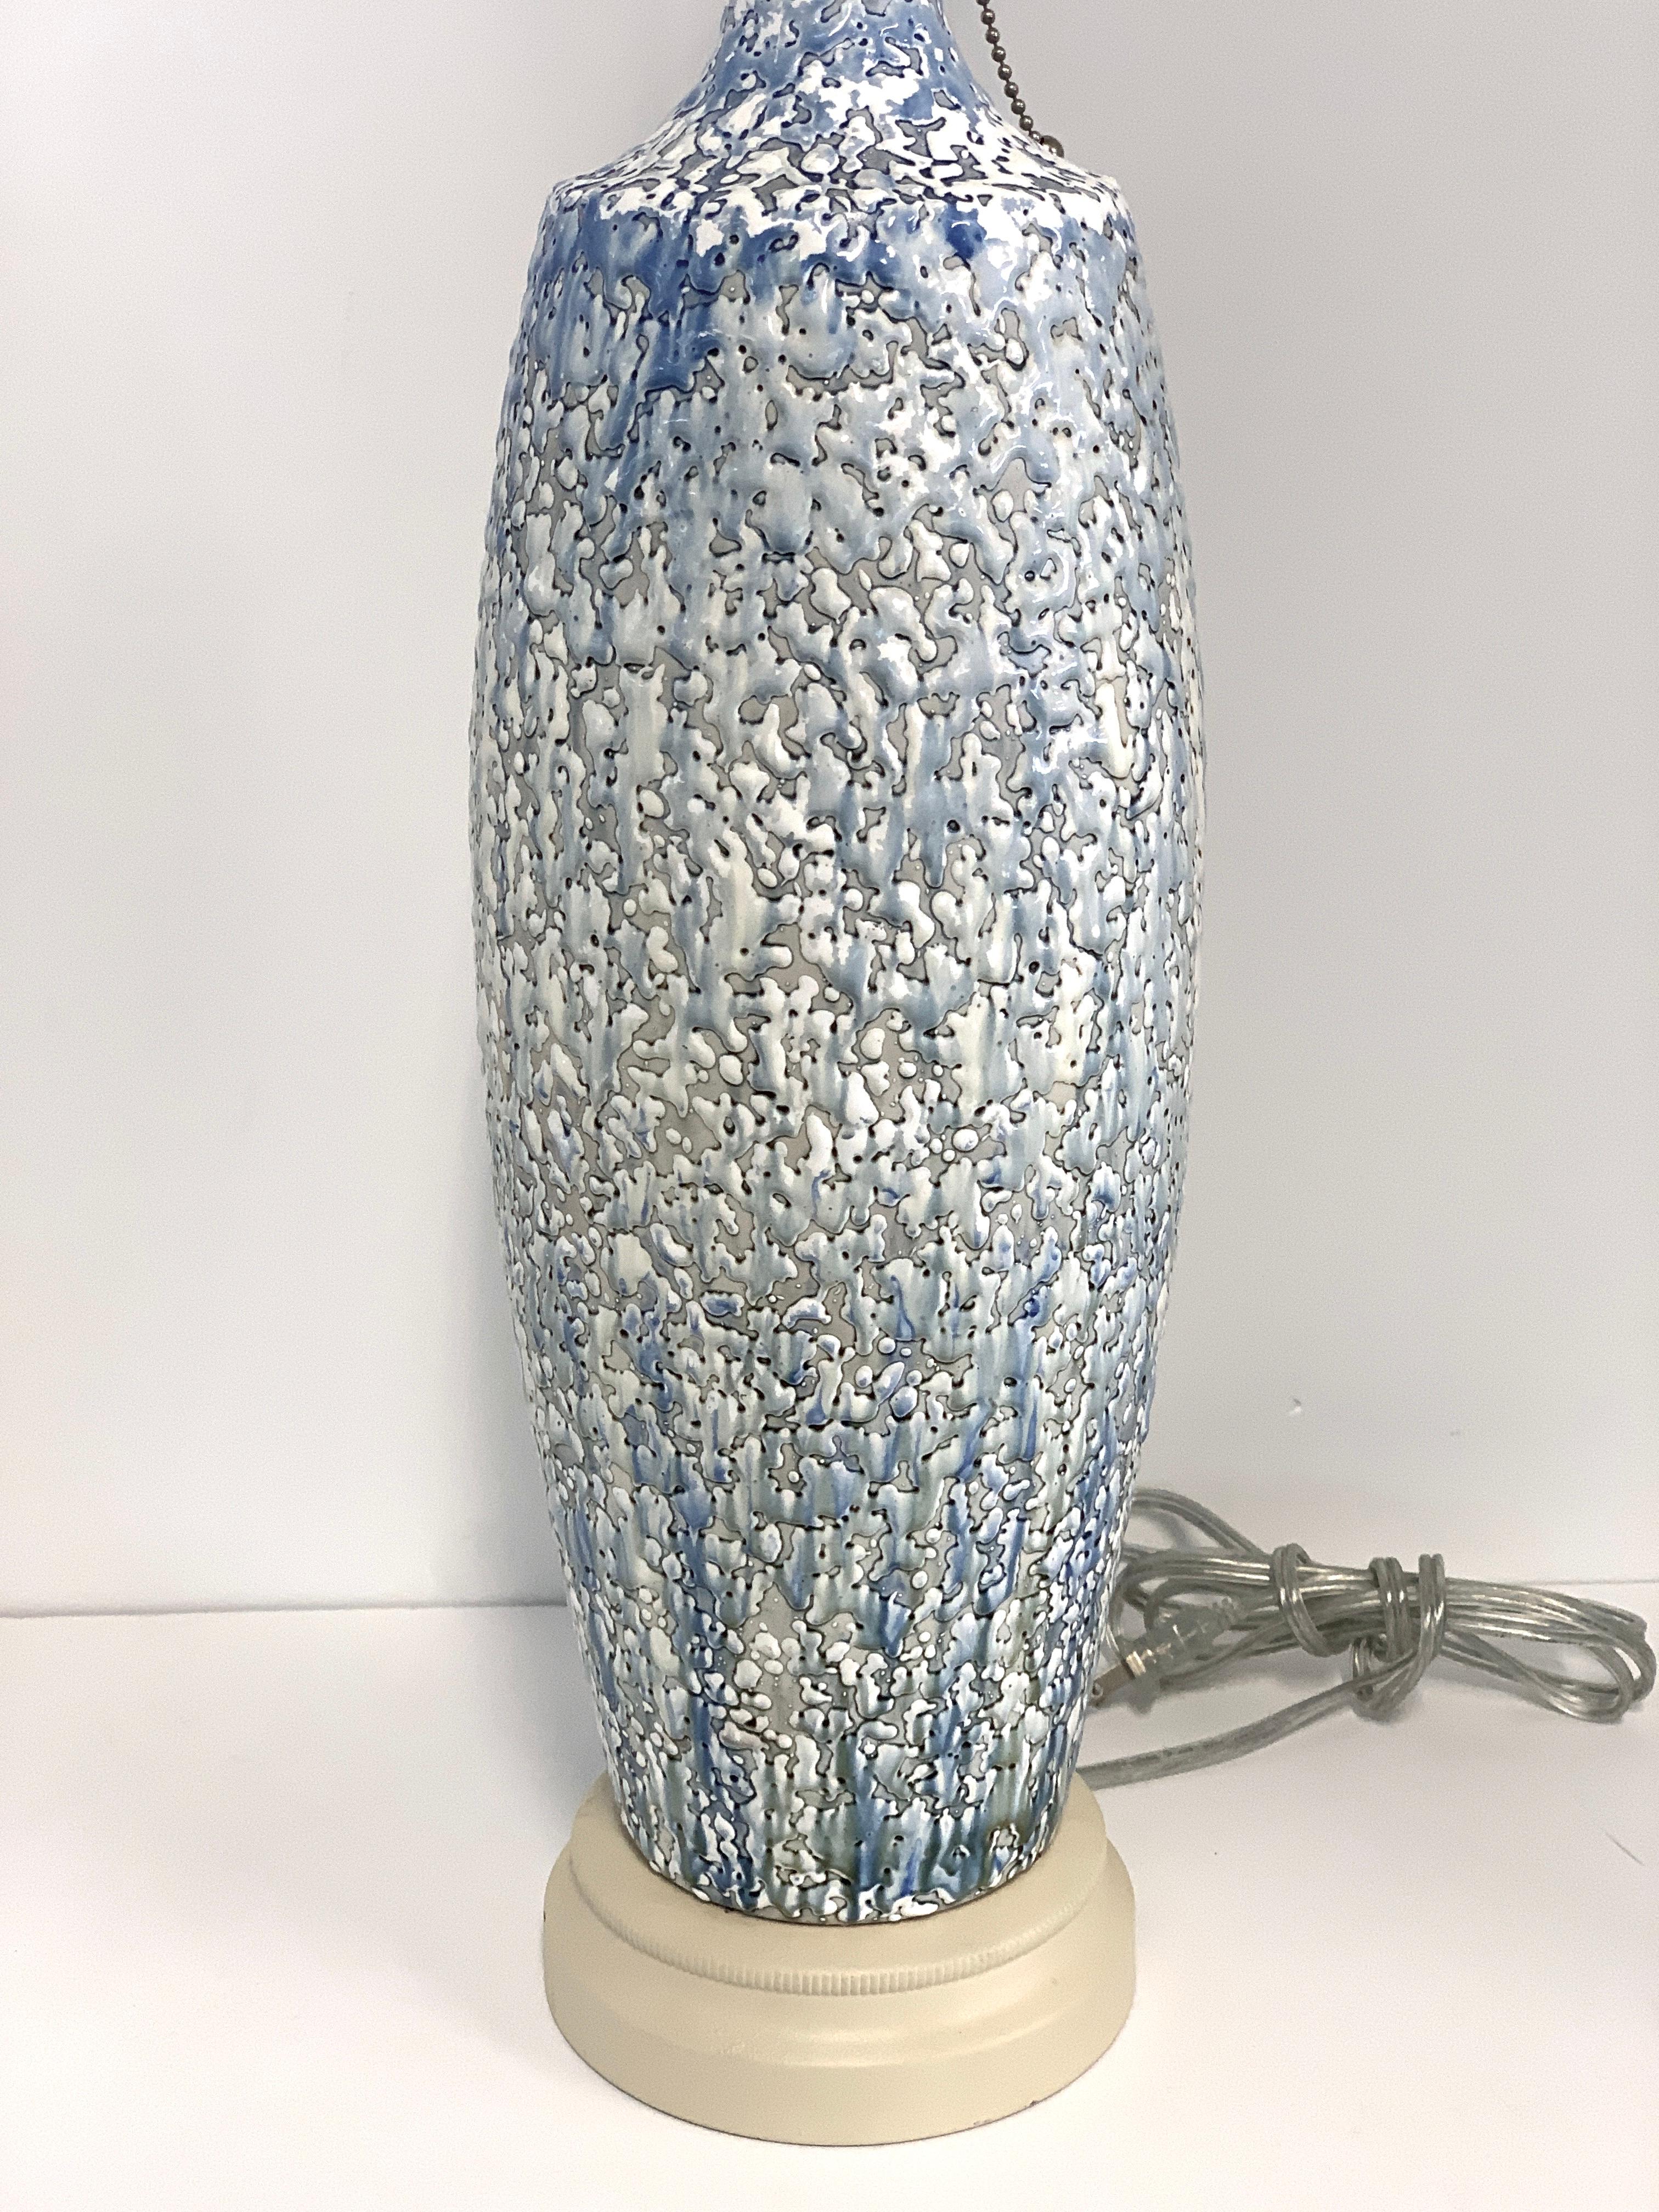 Eine hübsche Keramiklampe mit Tropfglasur. Es wurde neu verkabelt und mit einer neuen Nickelsteckdose ausgestattet. Die Kappen und der Sockel wurden in ihrer ursprünglichen, gebrochen weißen Farbe belassen. Es gibt einige kleine Flecken von